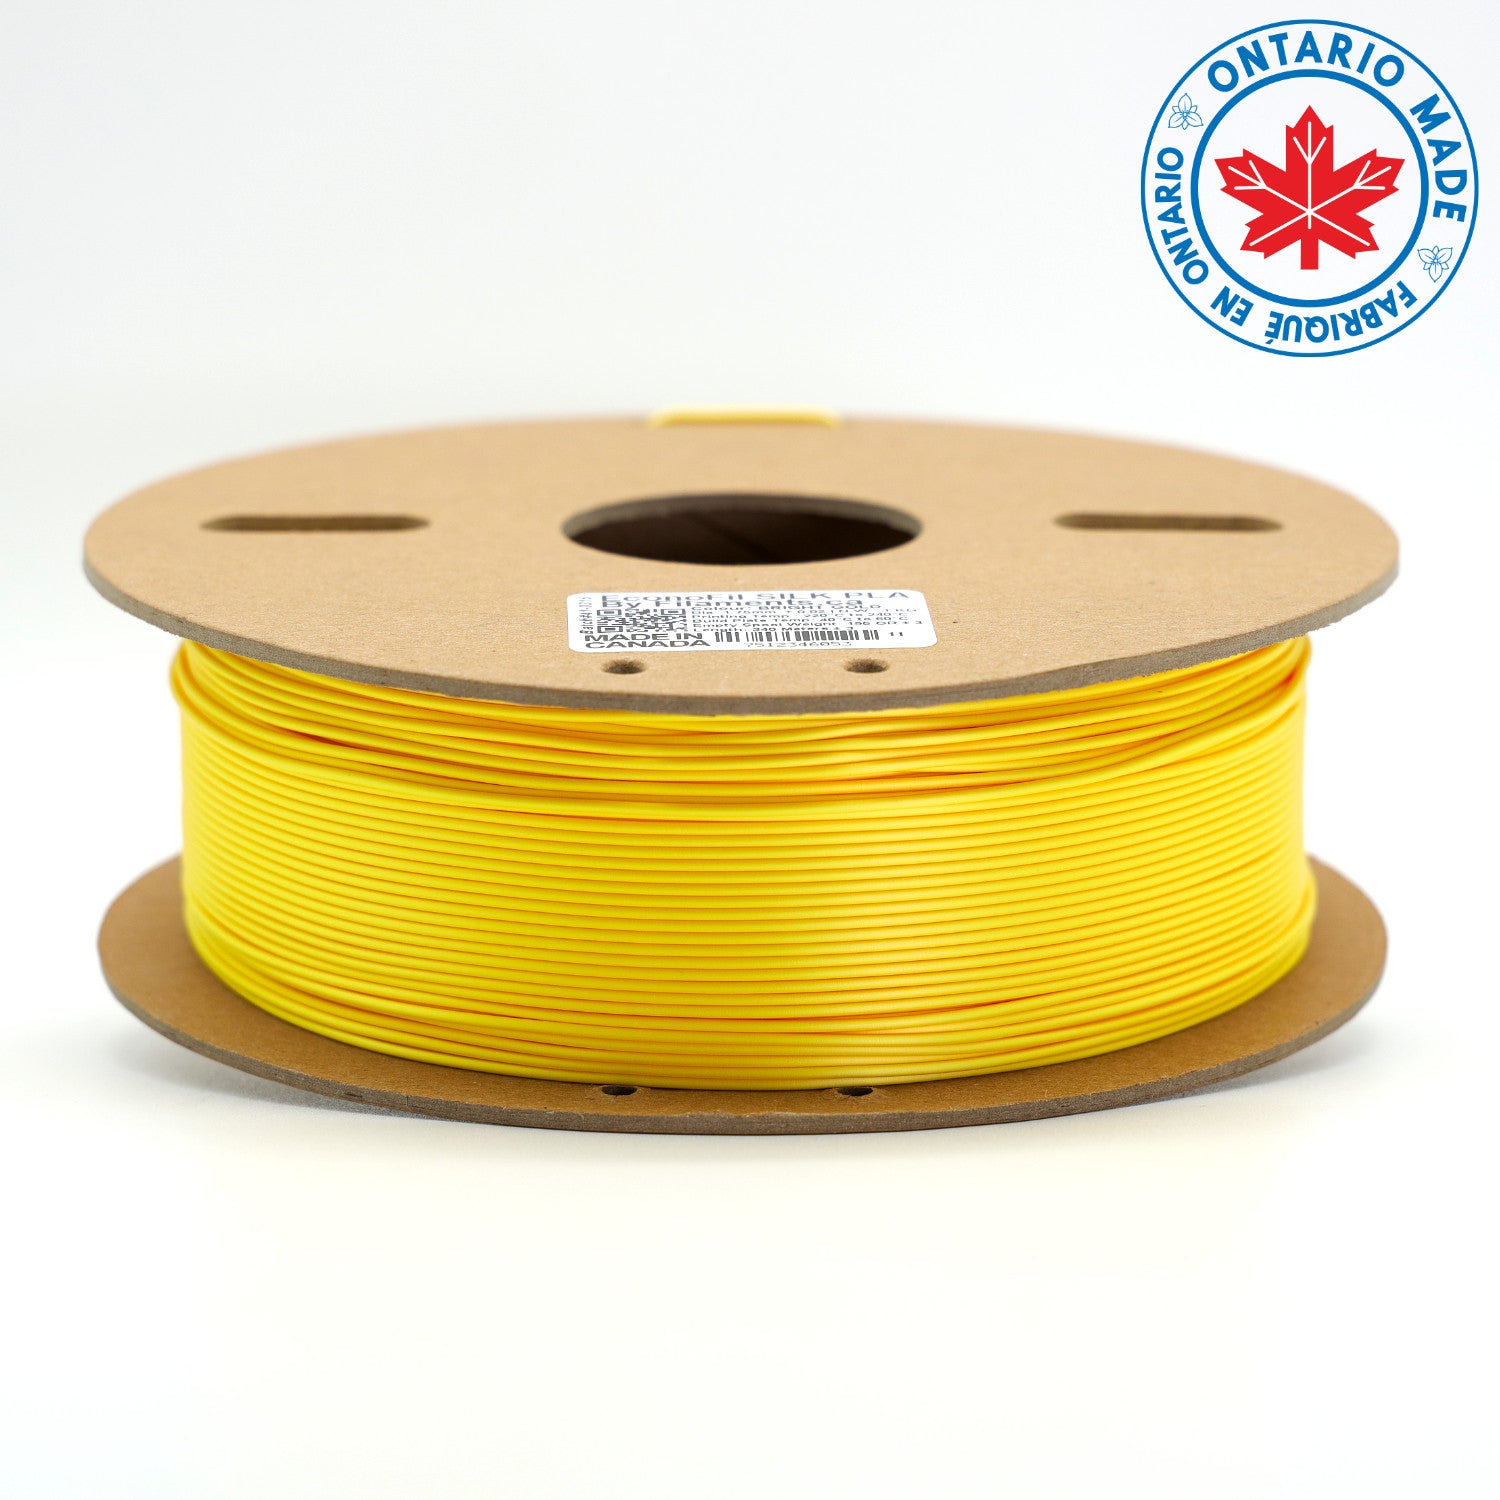 EconoFil™ Standard PLA Filament - SILK BRIGHT GOLD - 1.75mm - 1 KG